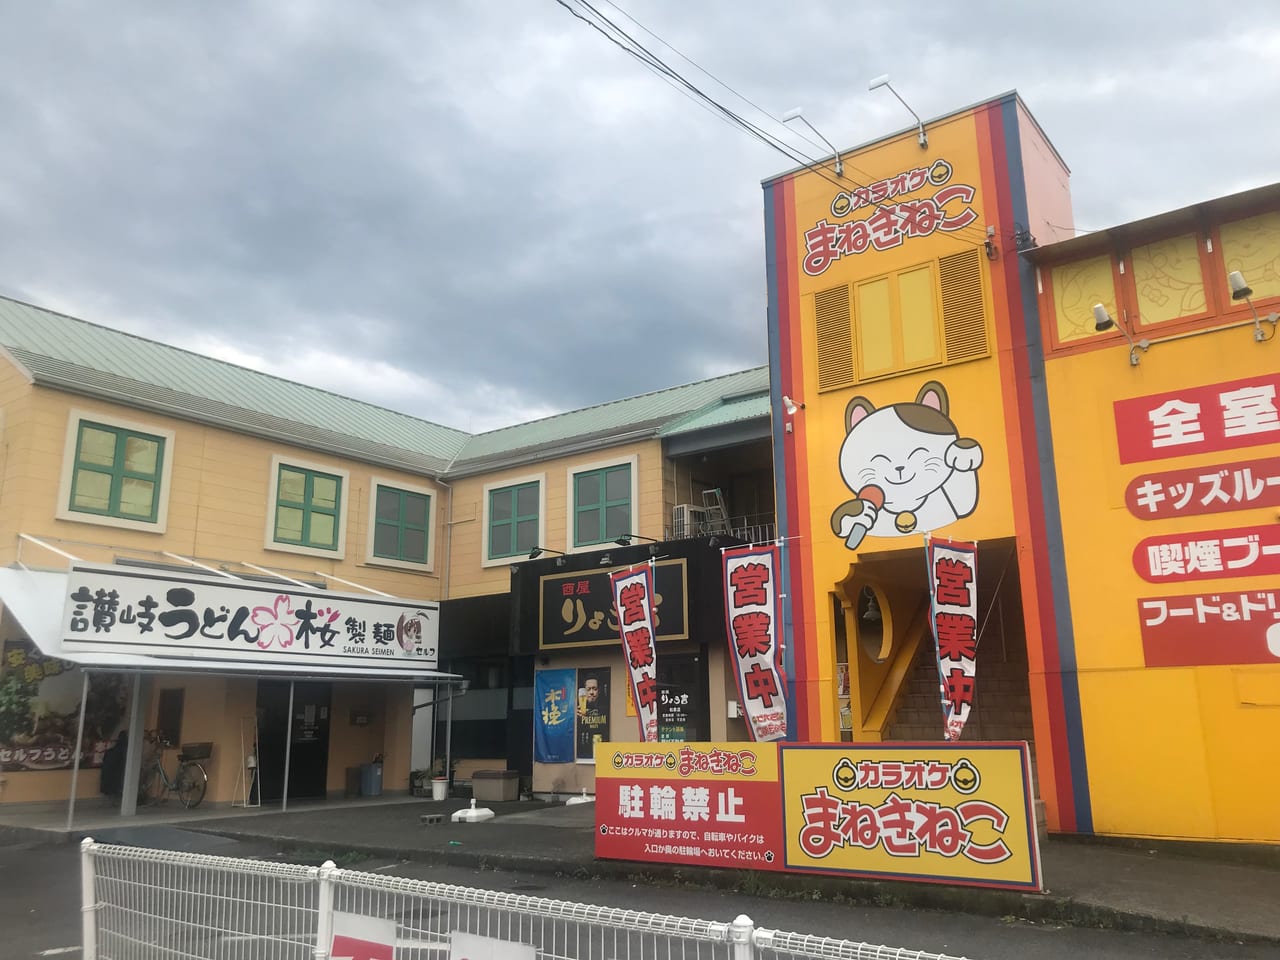 松山市 東温市で超人気のラーメン店 芯せかい が松山にも 年6月29日オープン予定です 号外net 松山市 中予地方